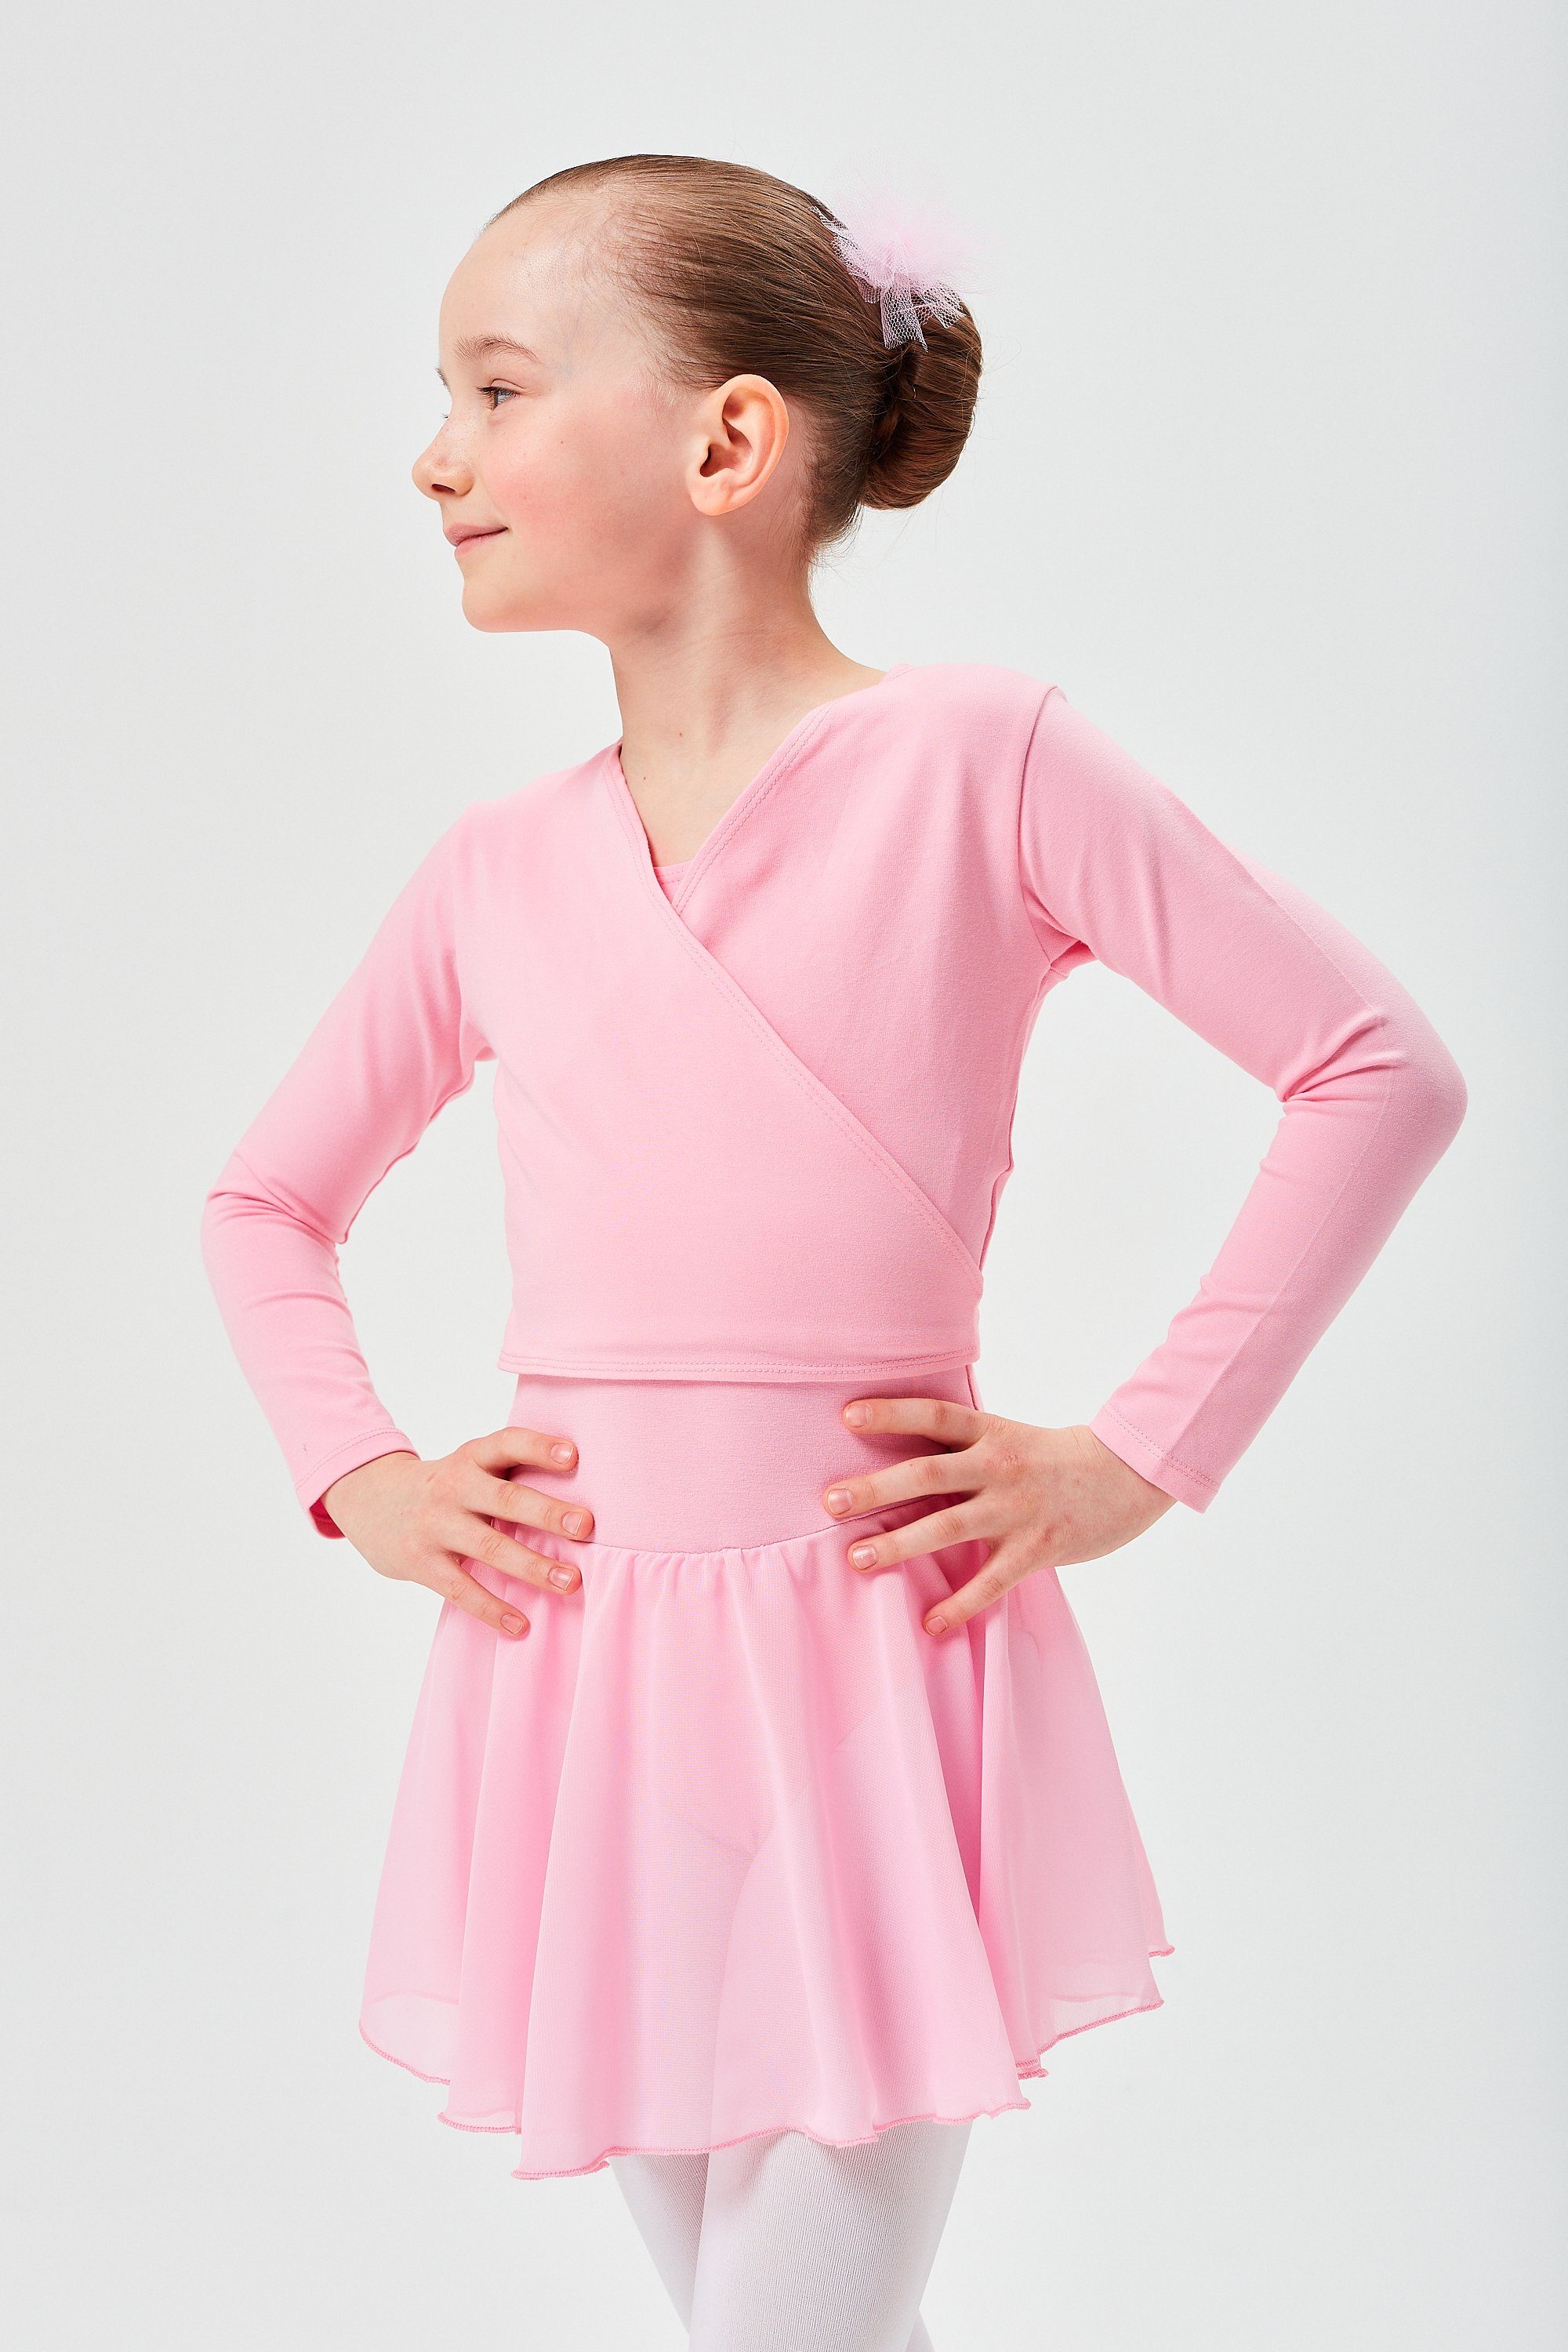 tanzmuster Sweatjacke aus rosa Mädchen Ballettjacke für Ballett Wickelacke Mandy weicher Baumwolle